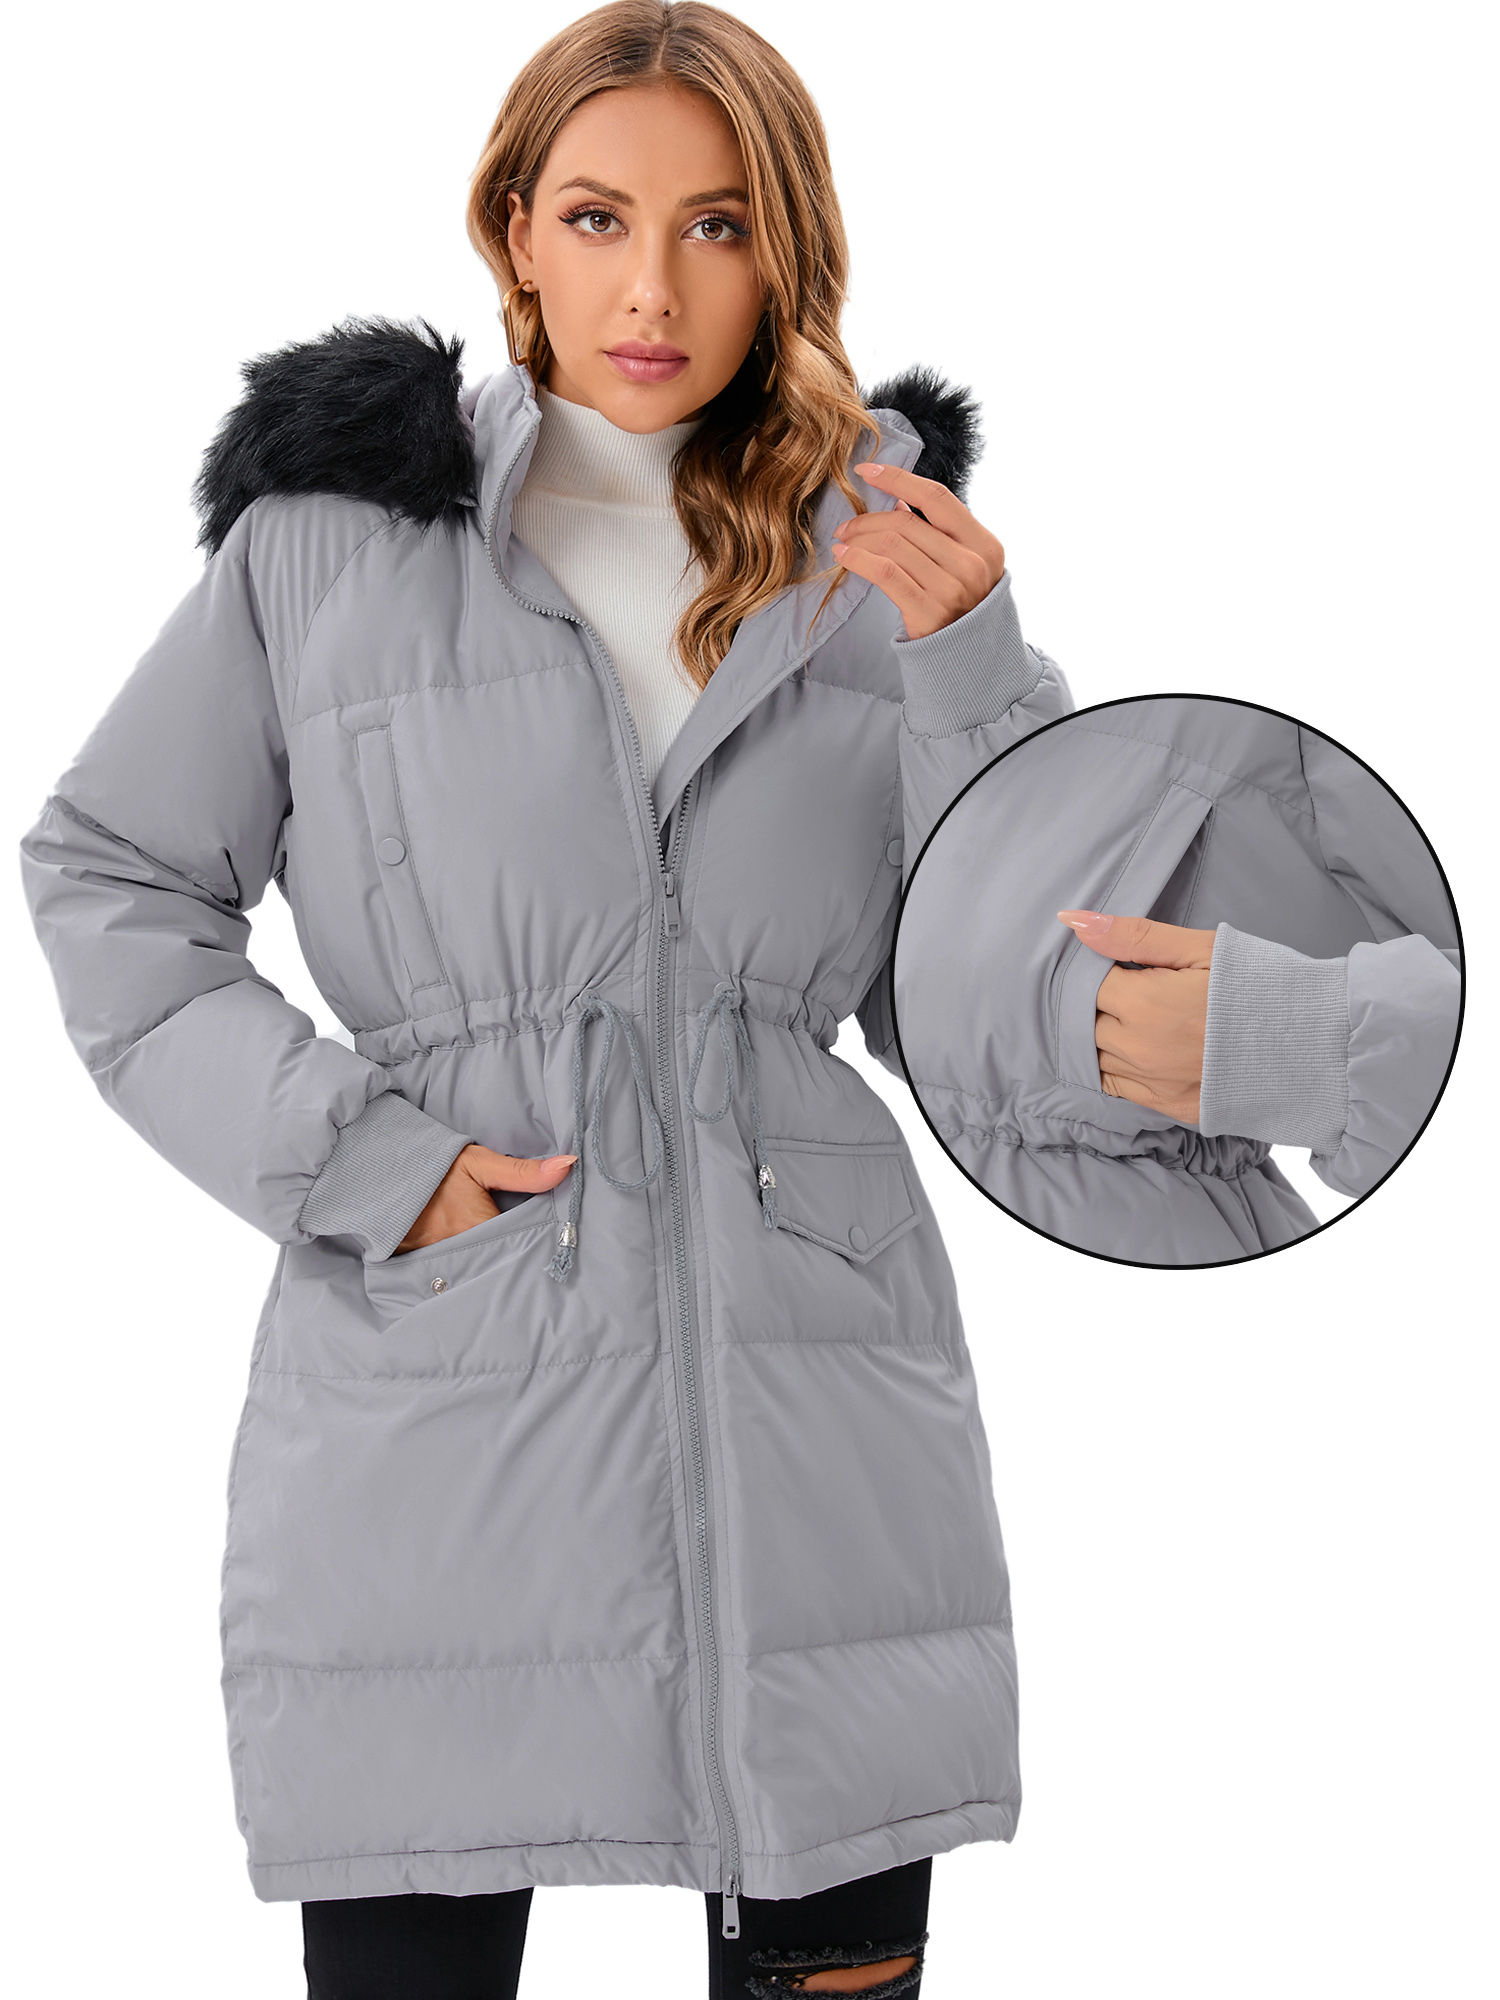 LELINTA Women's Heayweight Winter Warm Puffer Jacket Waterproof Rain Zip Parka Overcoats Jacket With Faux Fur Hooded - image 1 of 7